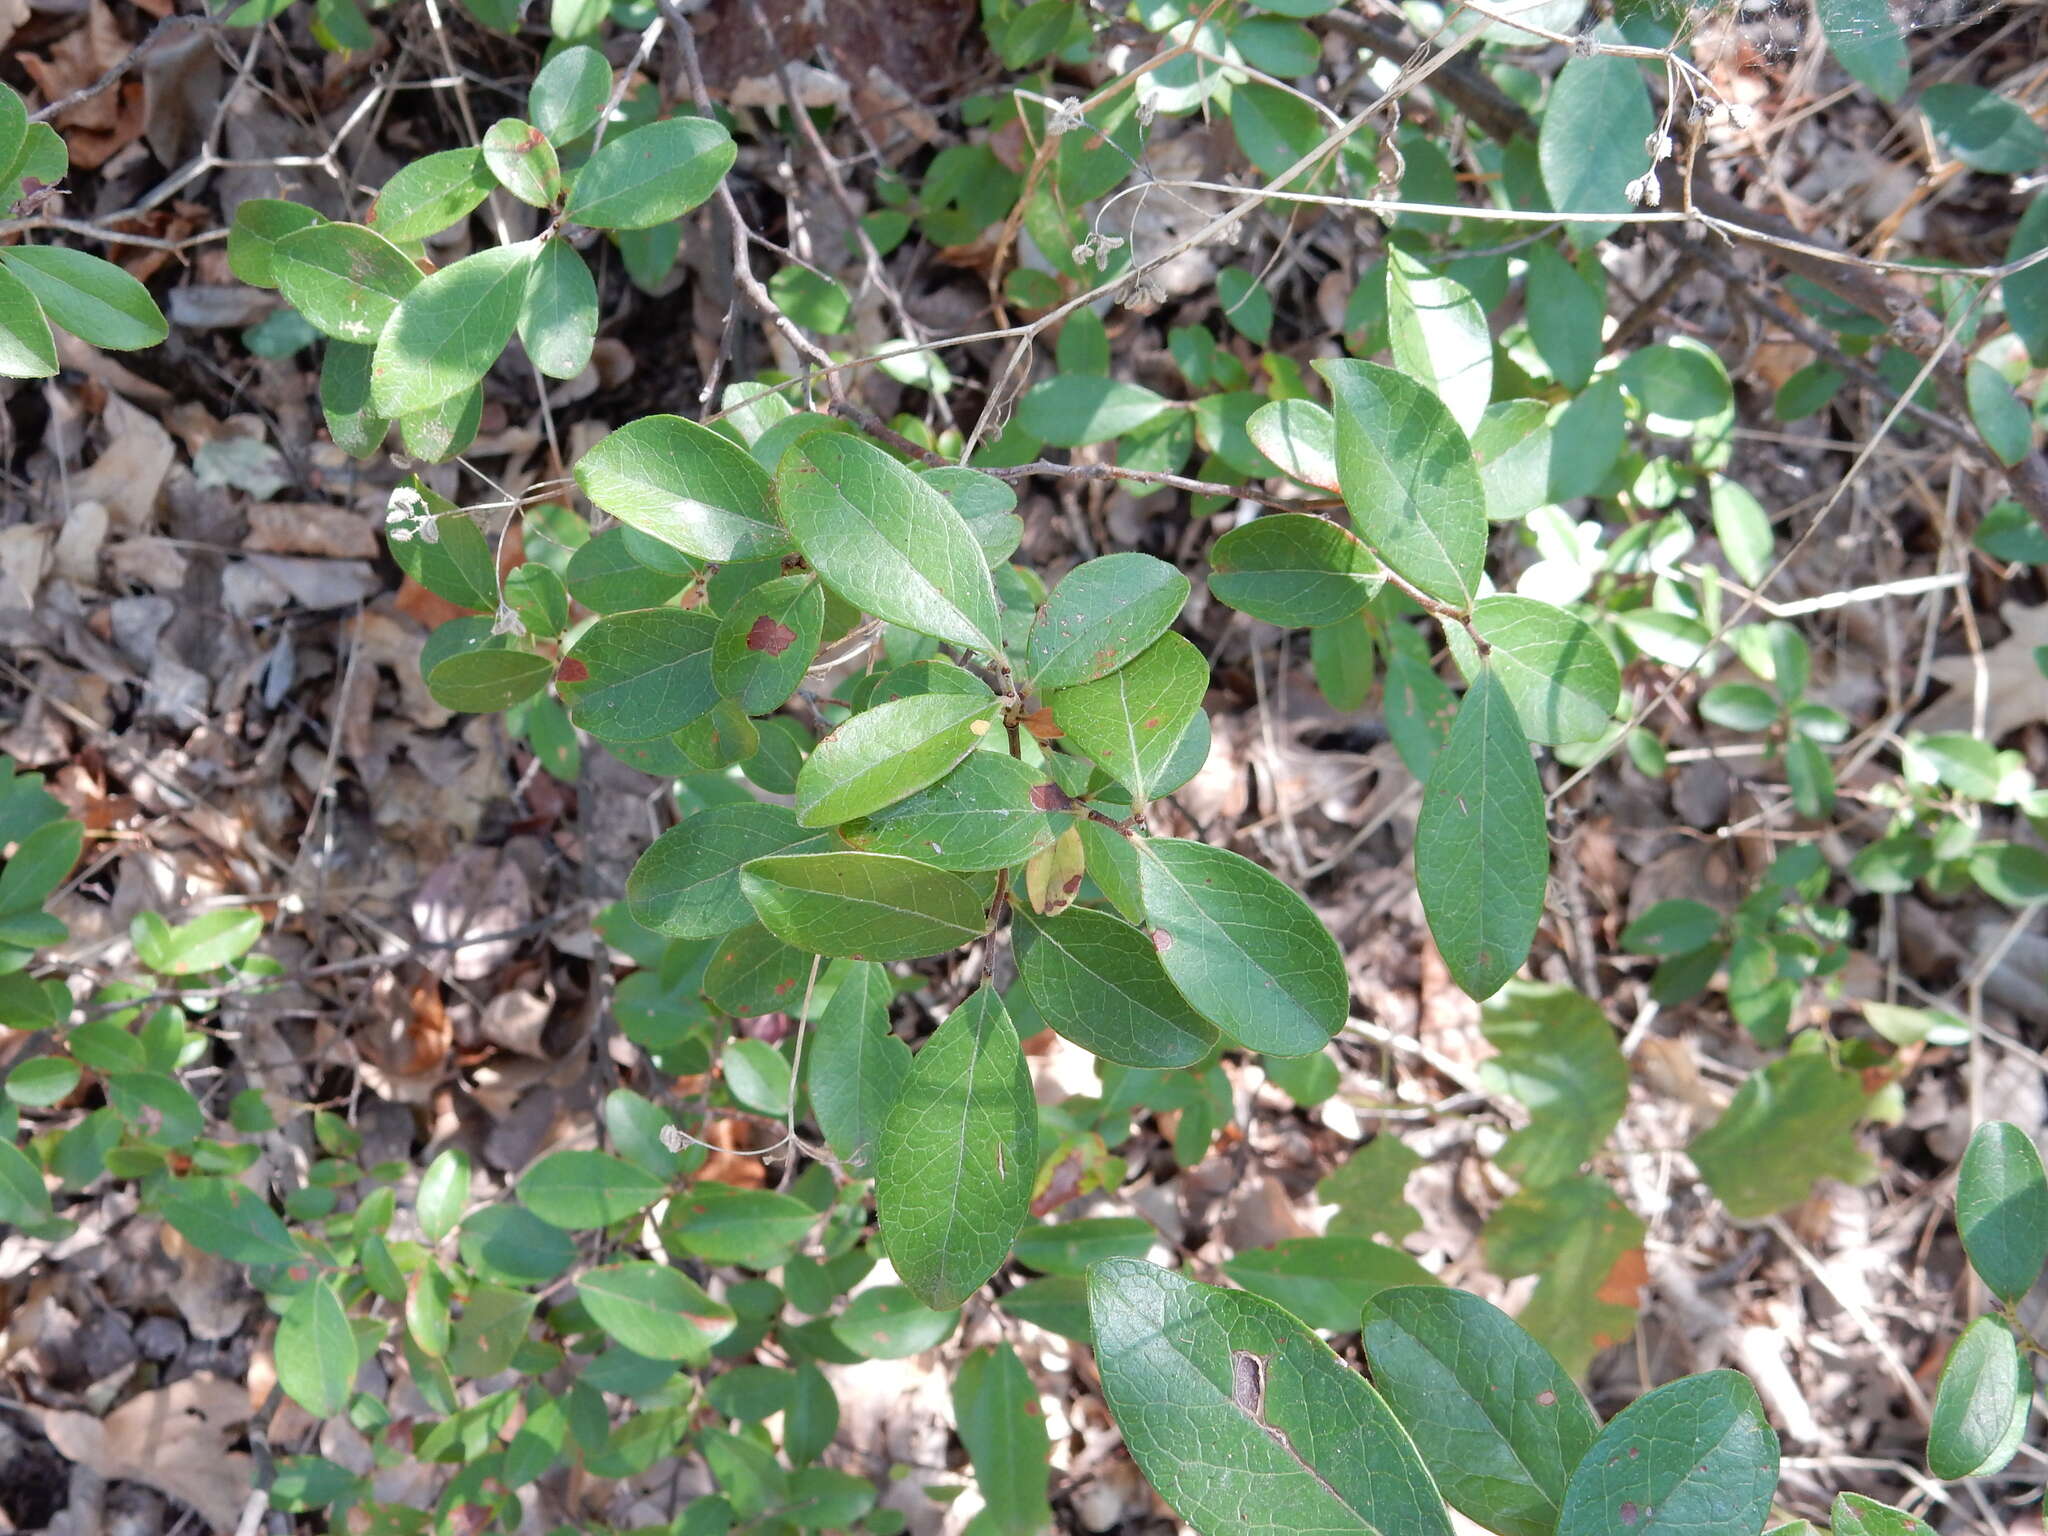 Image of farkleberry